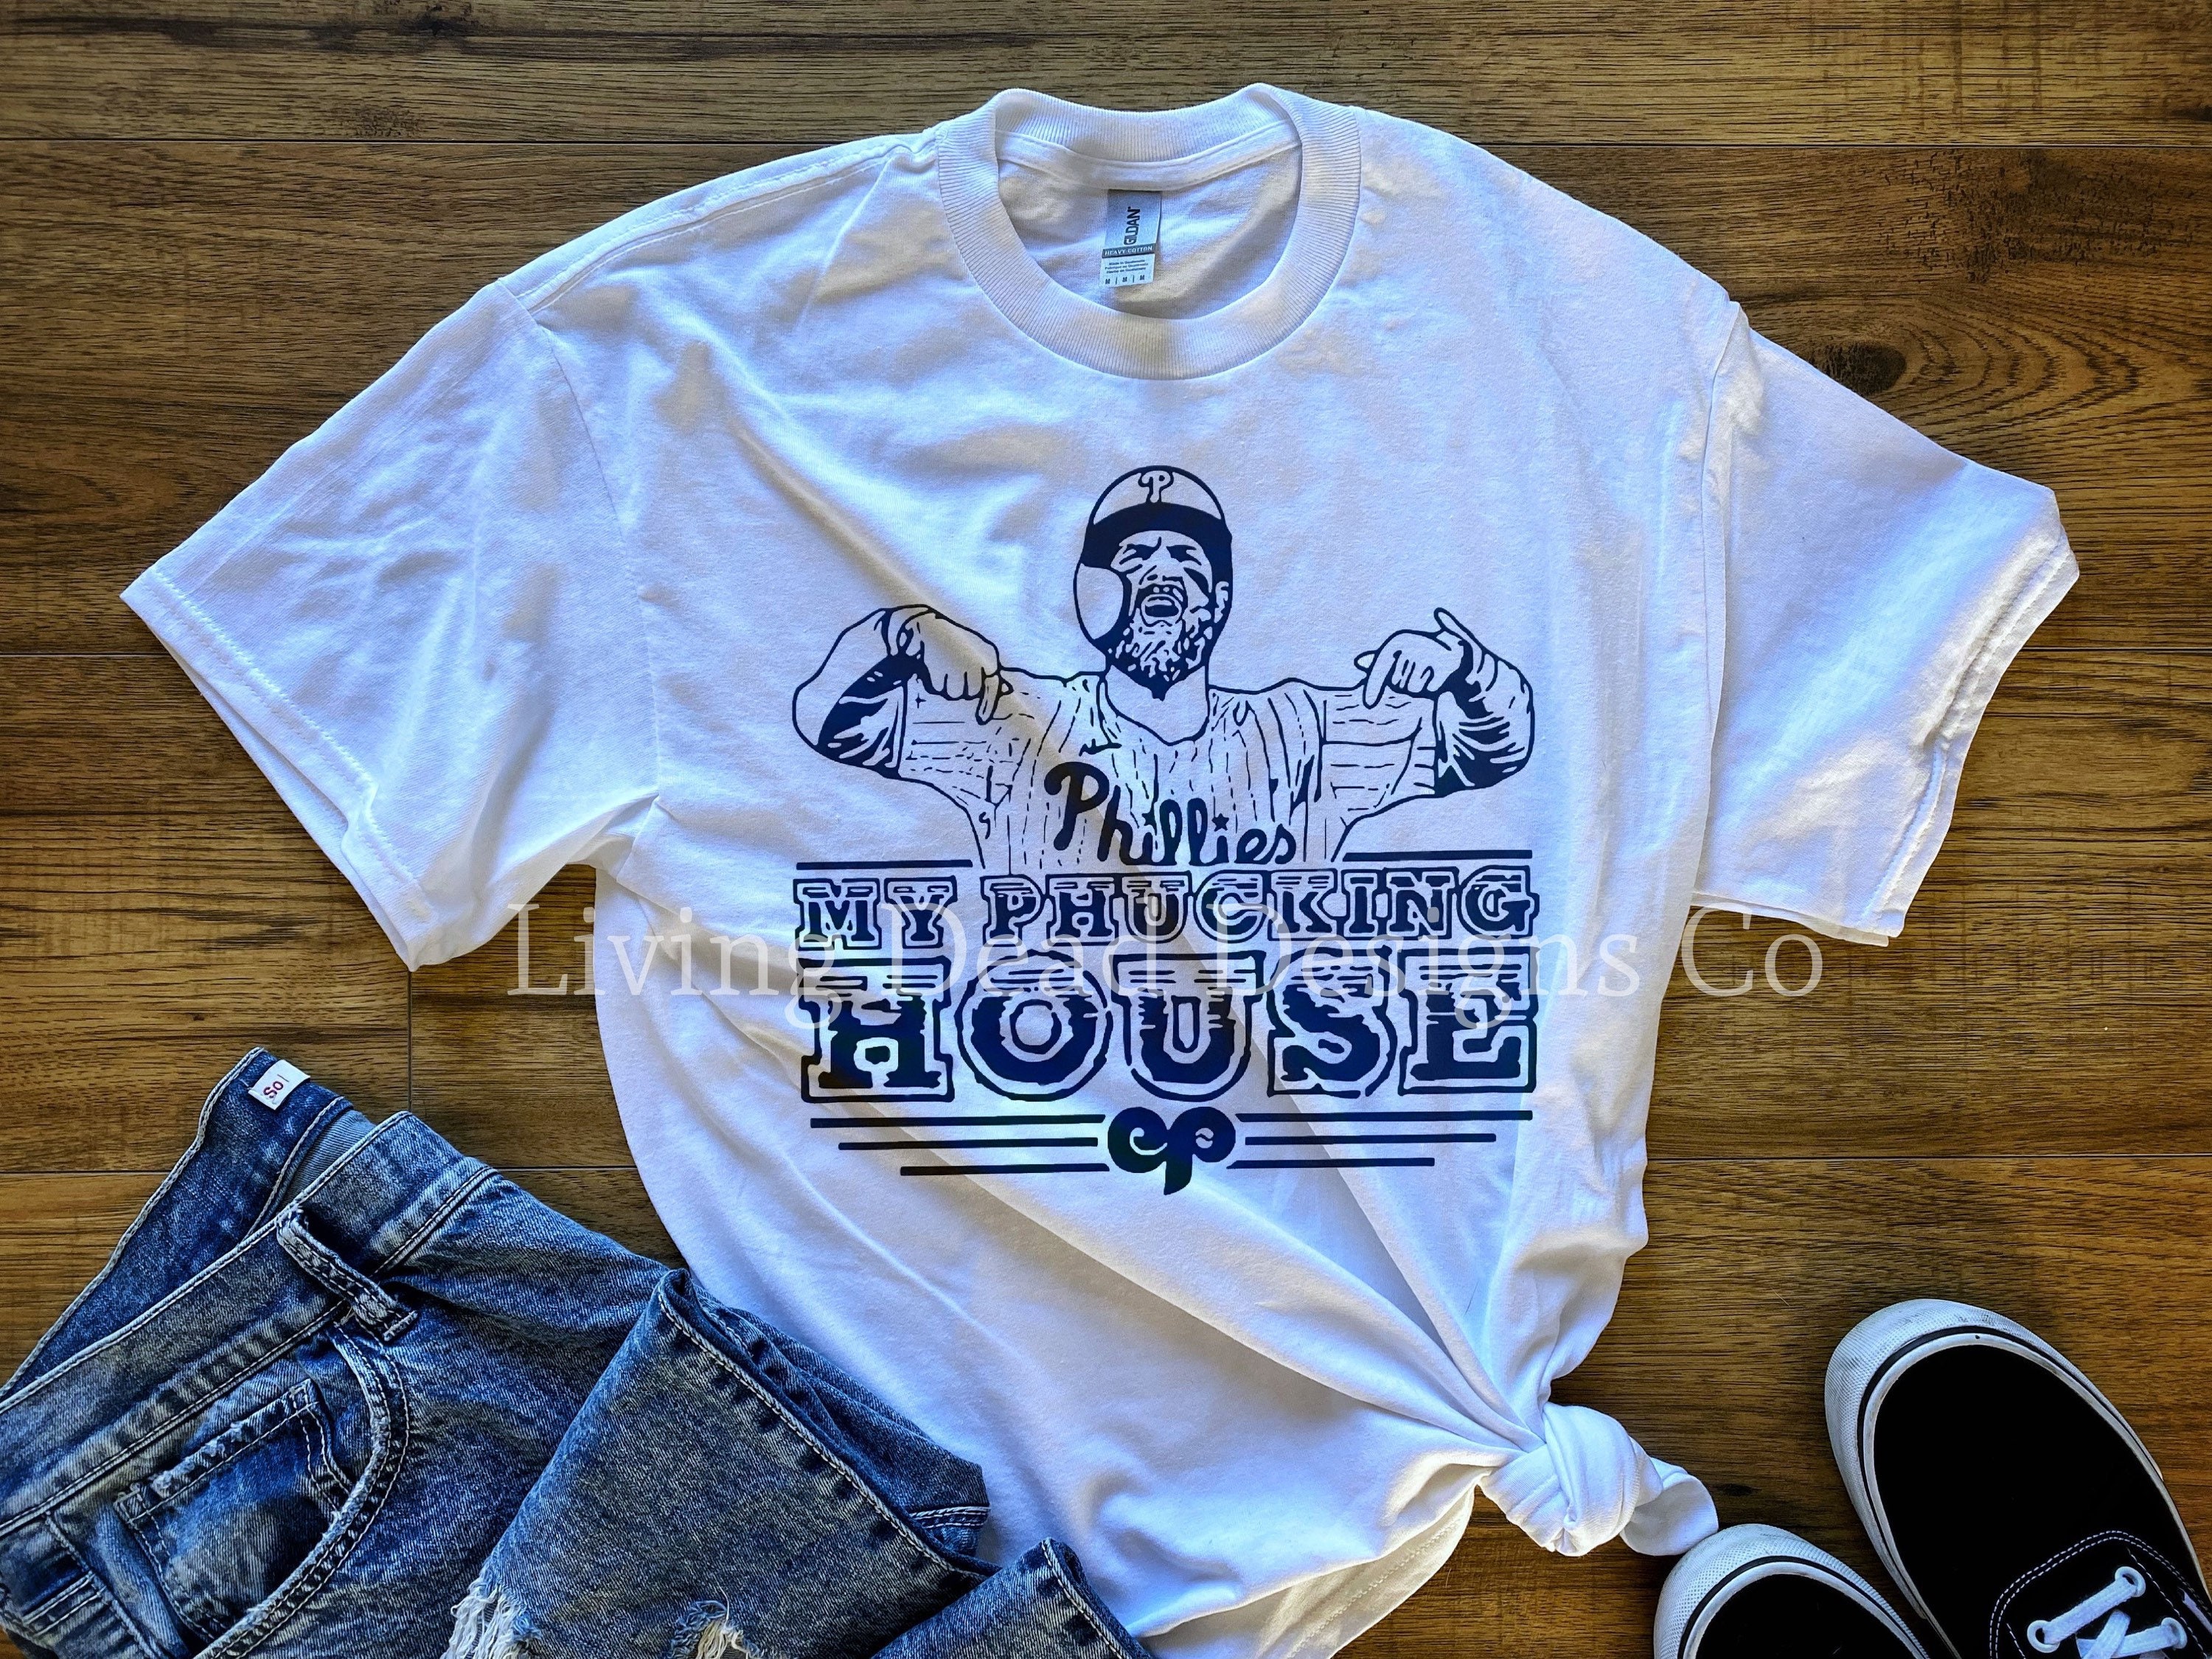 Bryce Harper Shirt, Philadelphia Phillis Baseball Trending T-Shirt